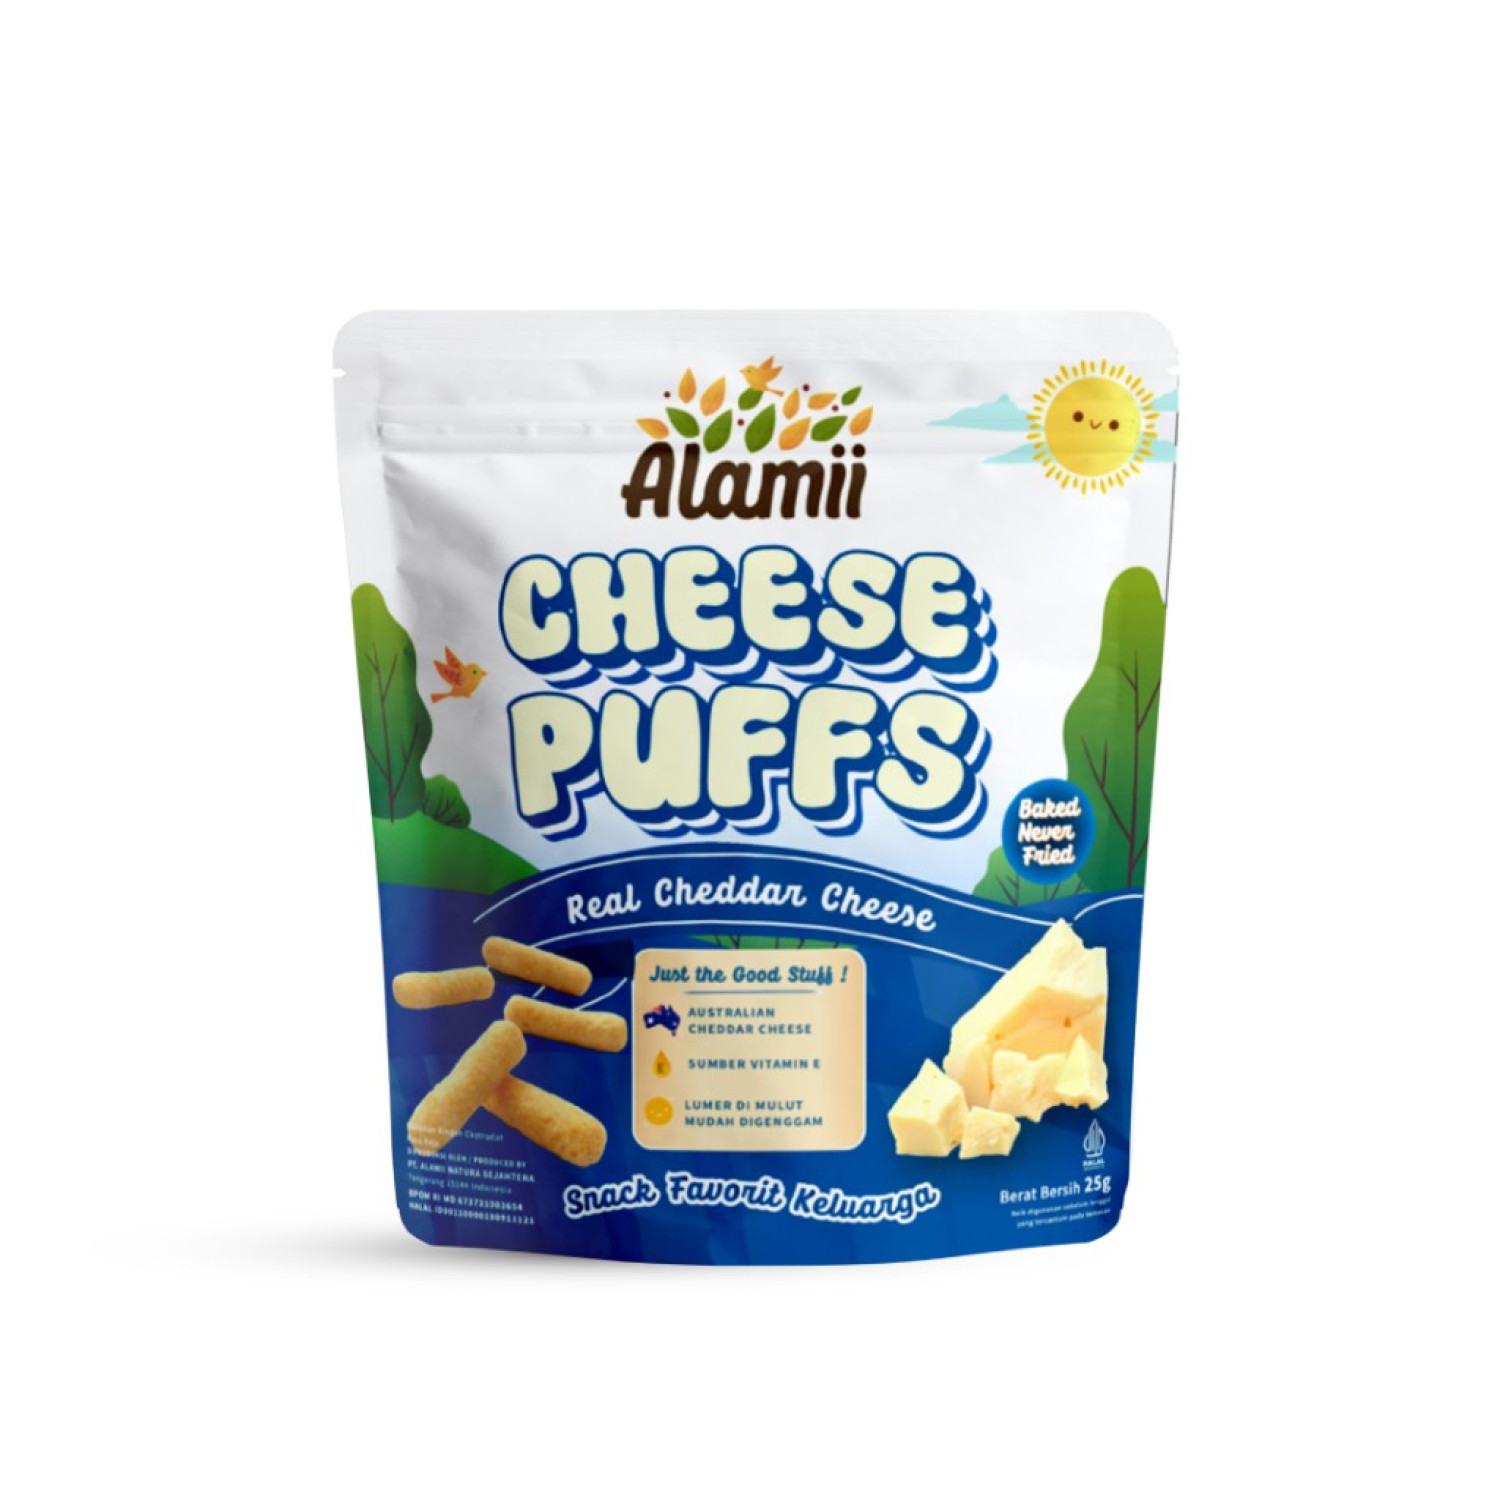 alamii-cheese-puffs-25-gr-65655daf9cef4.jpeg